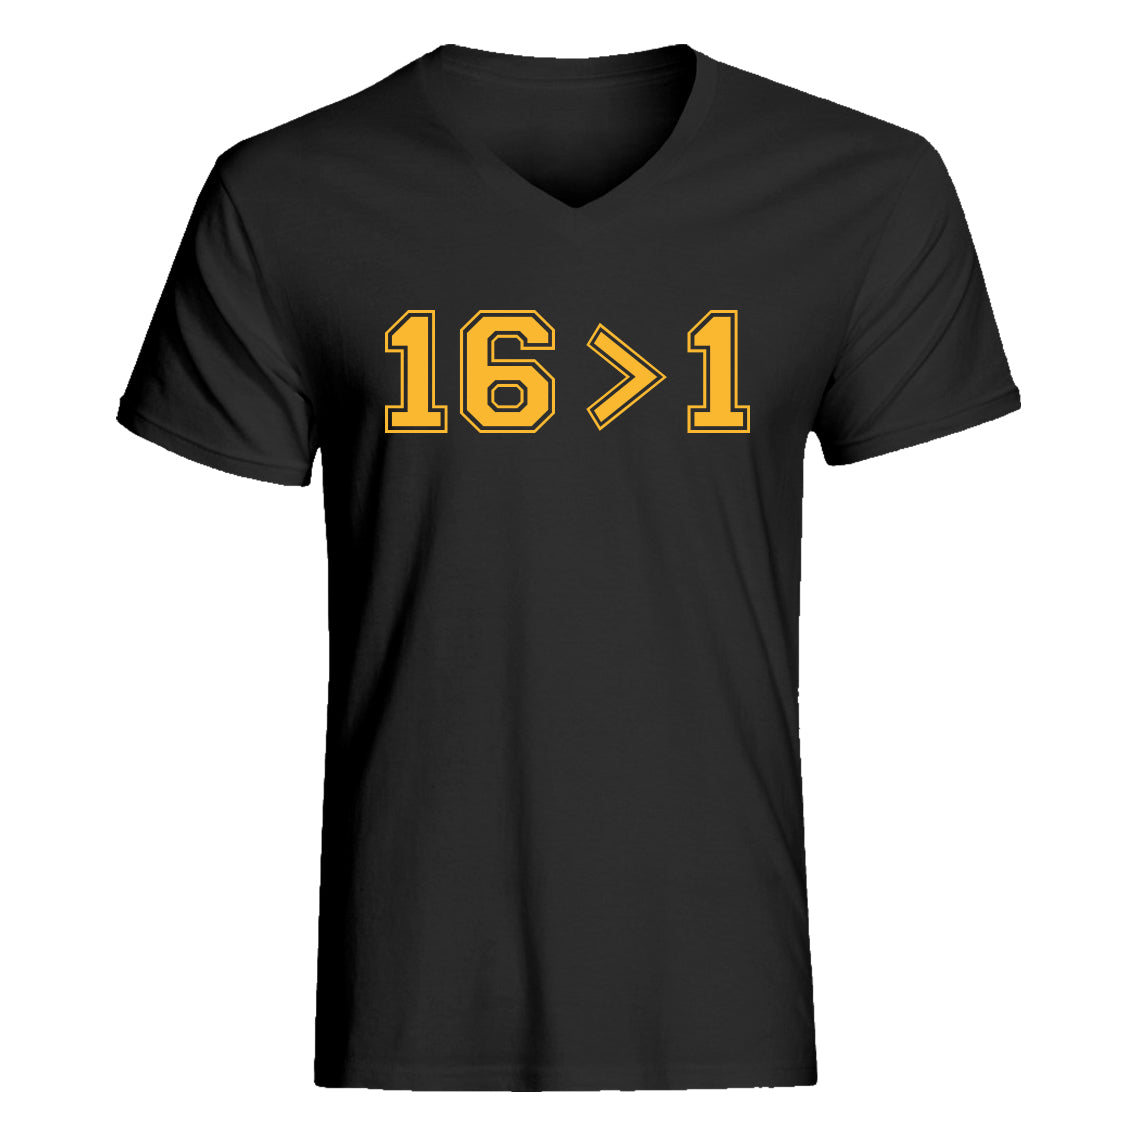 Mens 16 > 1 Vneck T-shirt